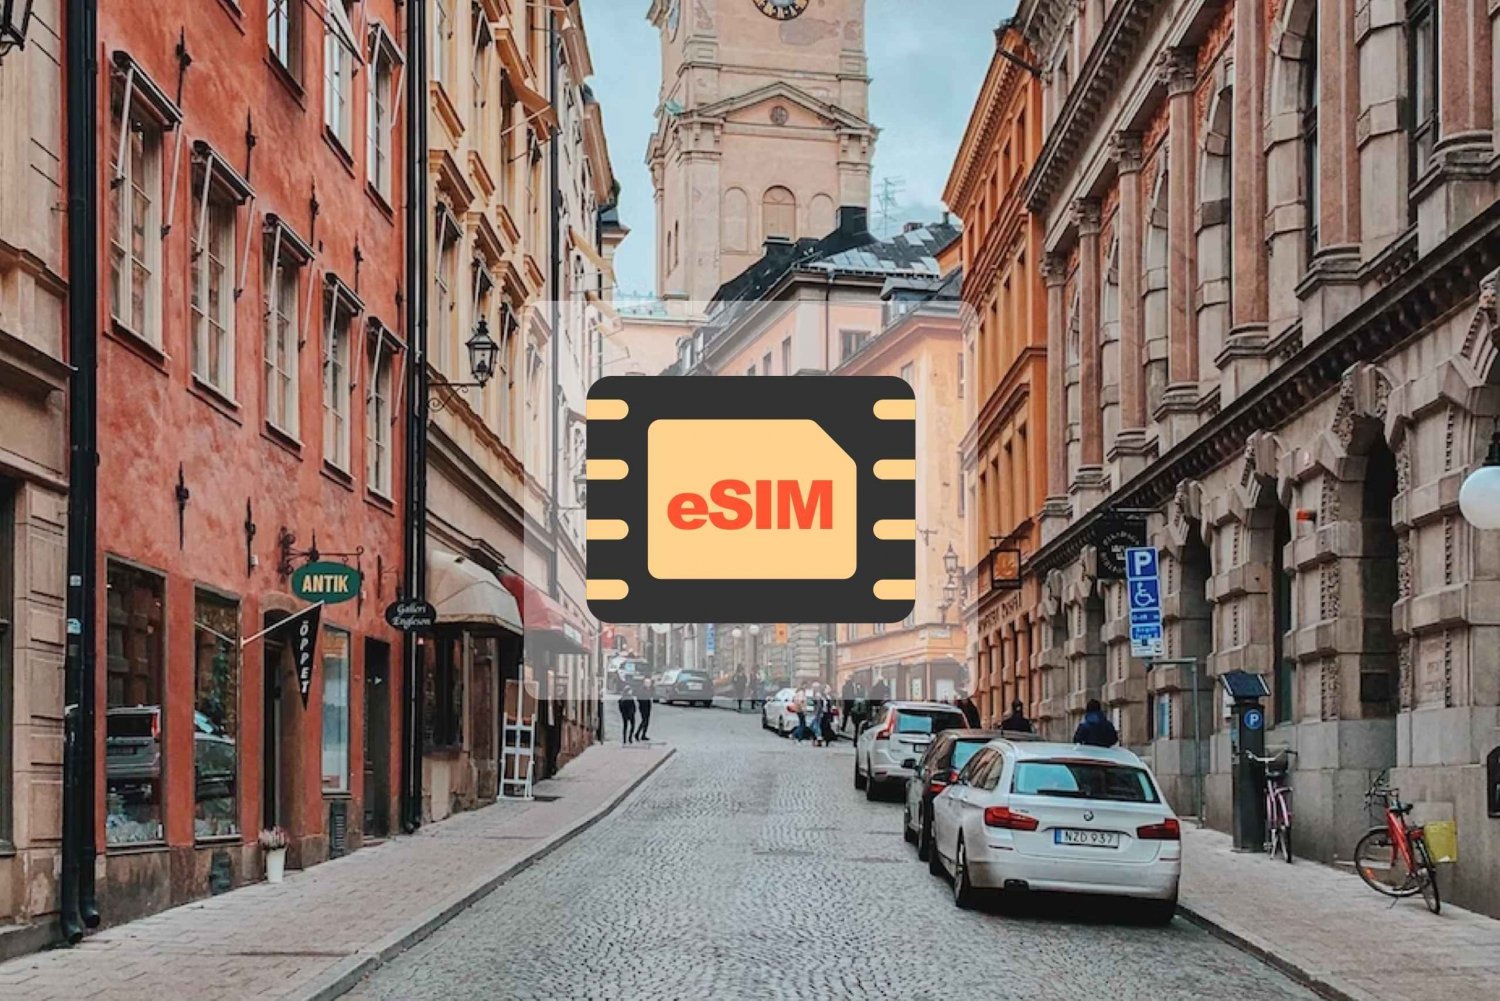 Storbritannien/Europa: eSim mobildataabonnement